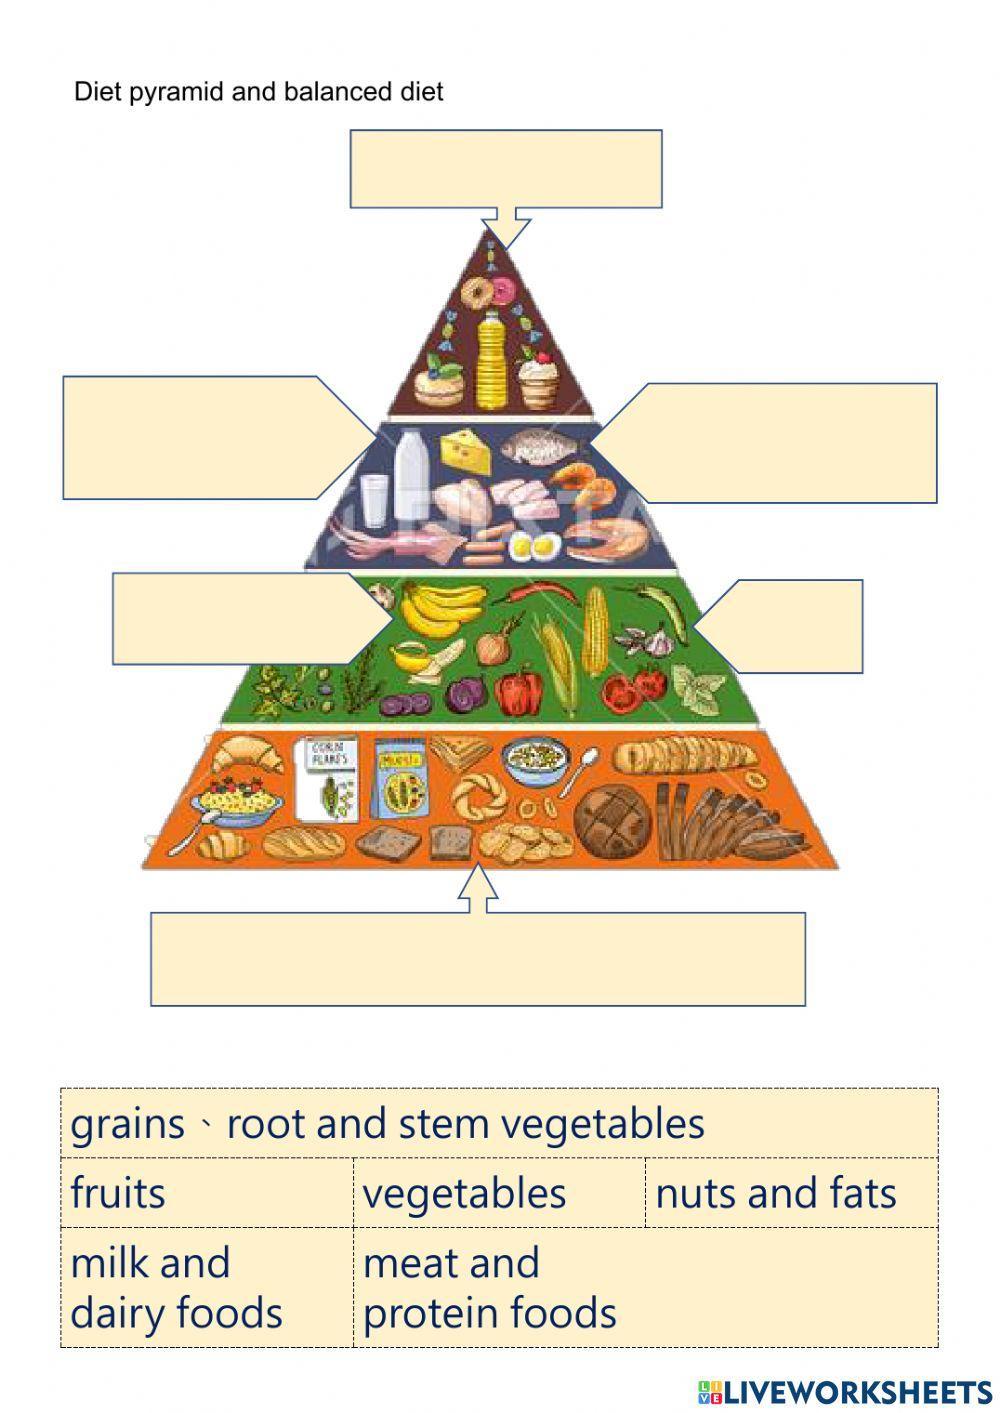 Diet pyramid